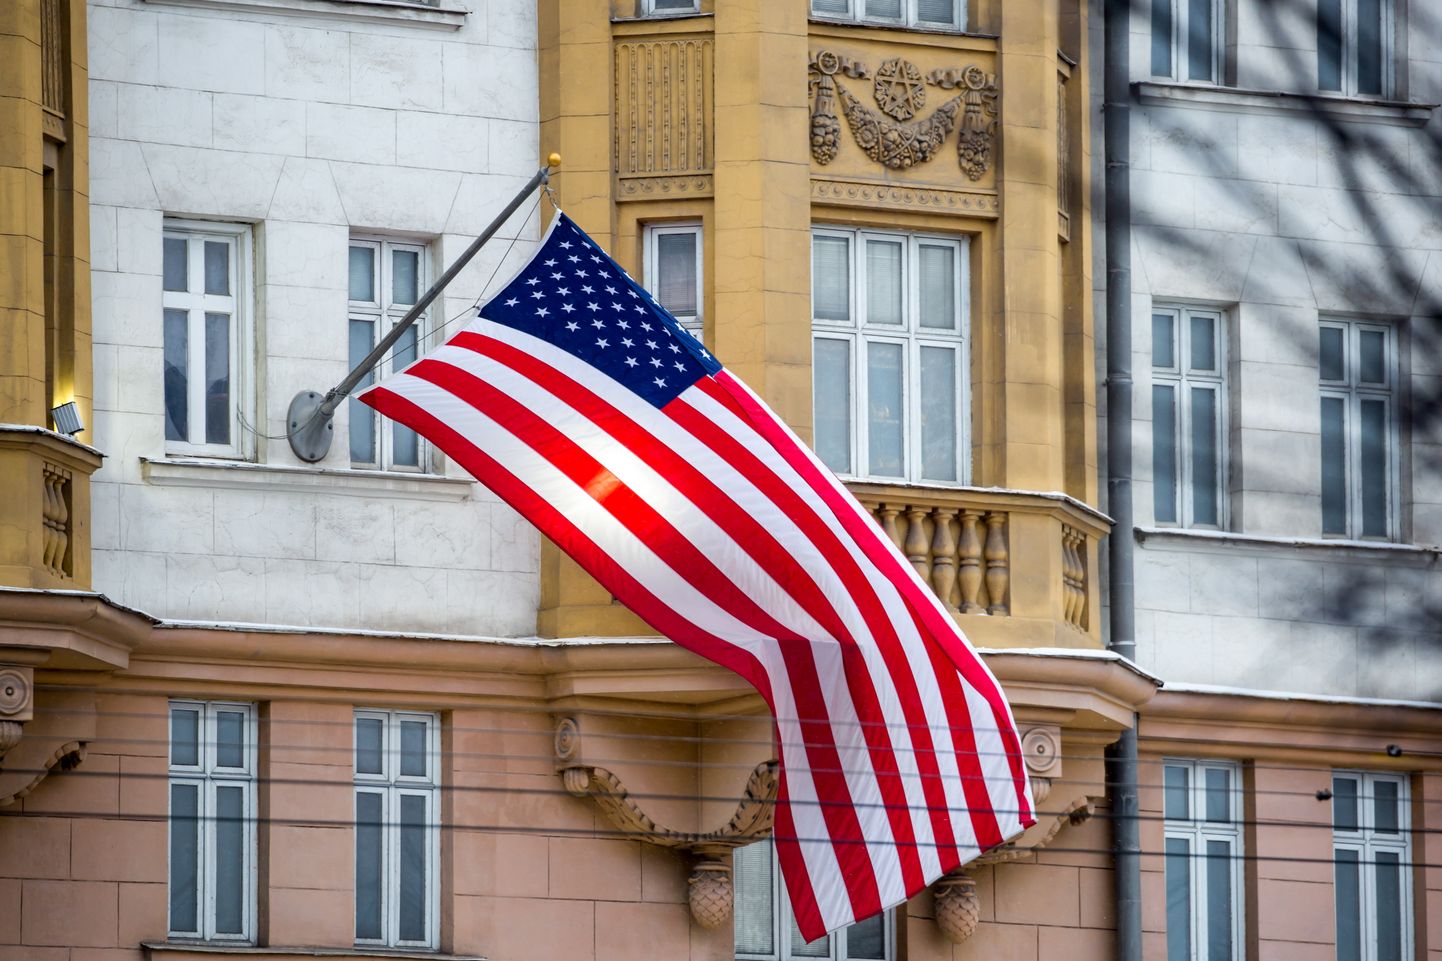 Ameerika Ühendriikide lipp Moskva suursaatkonna hoone küljes.